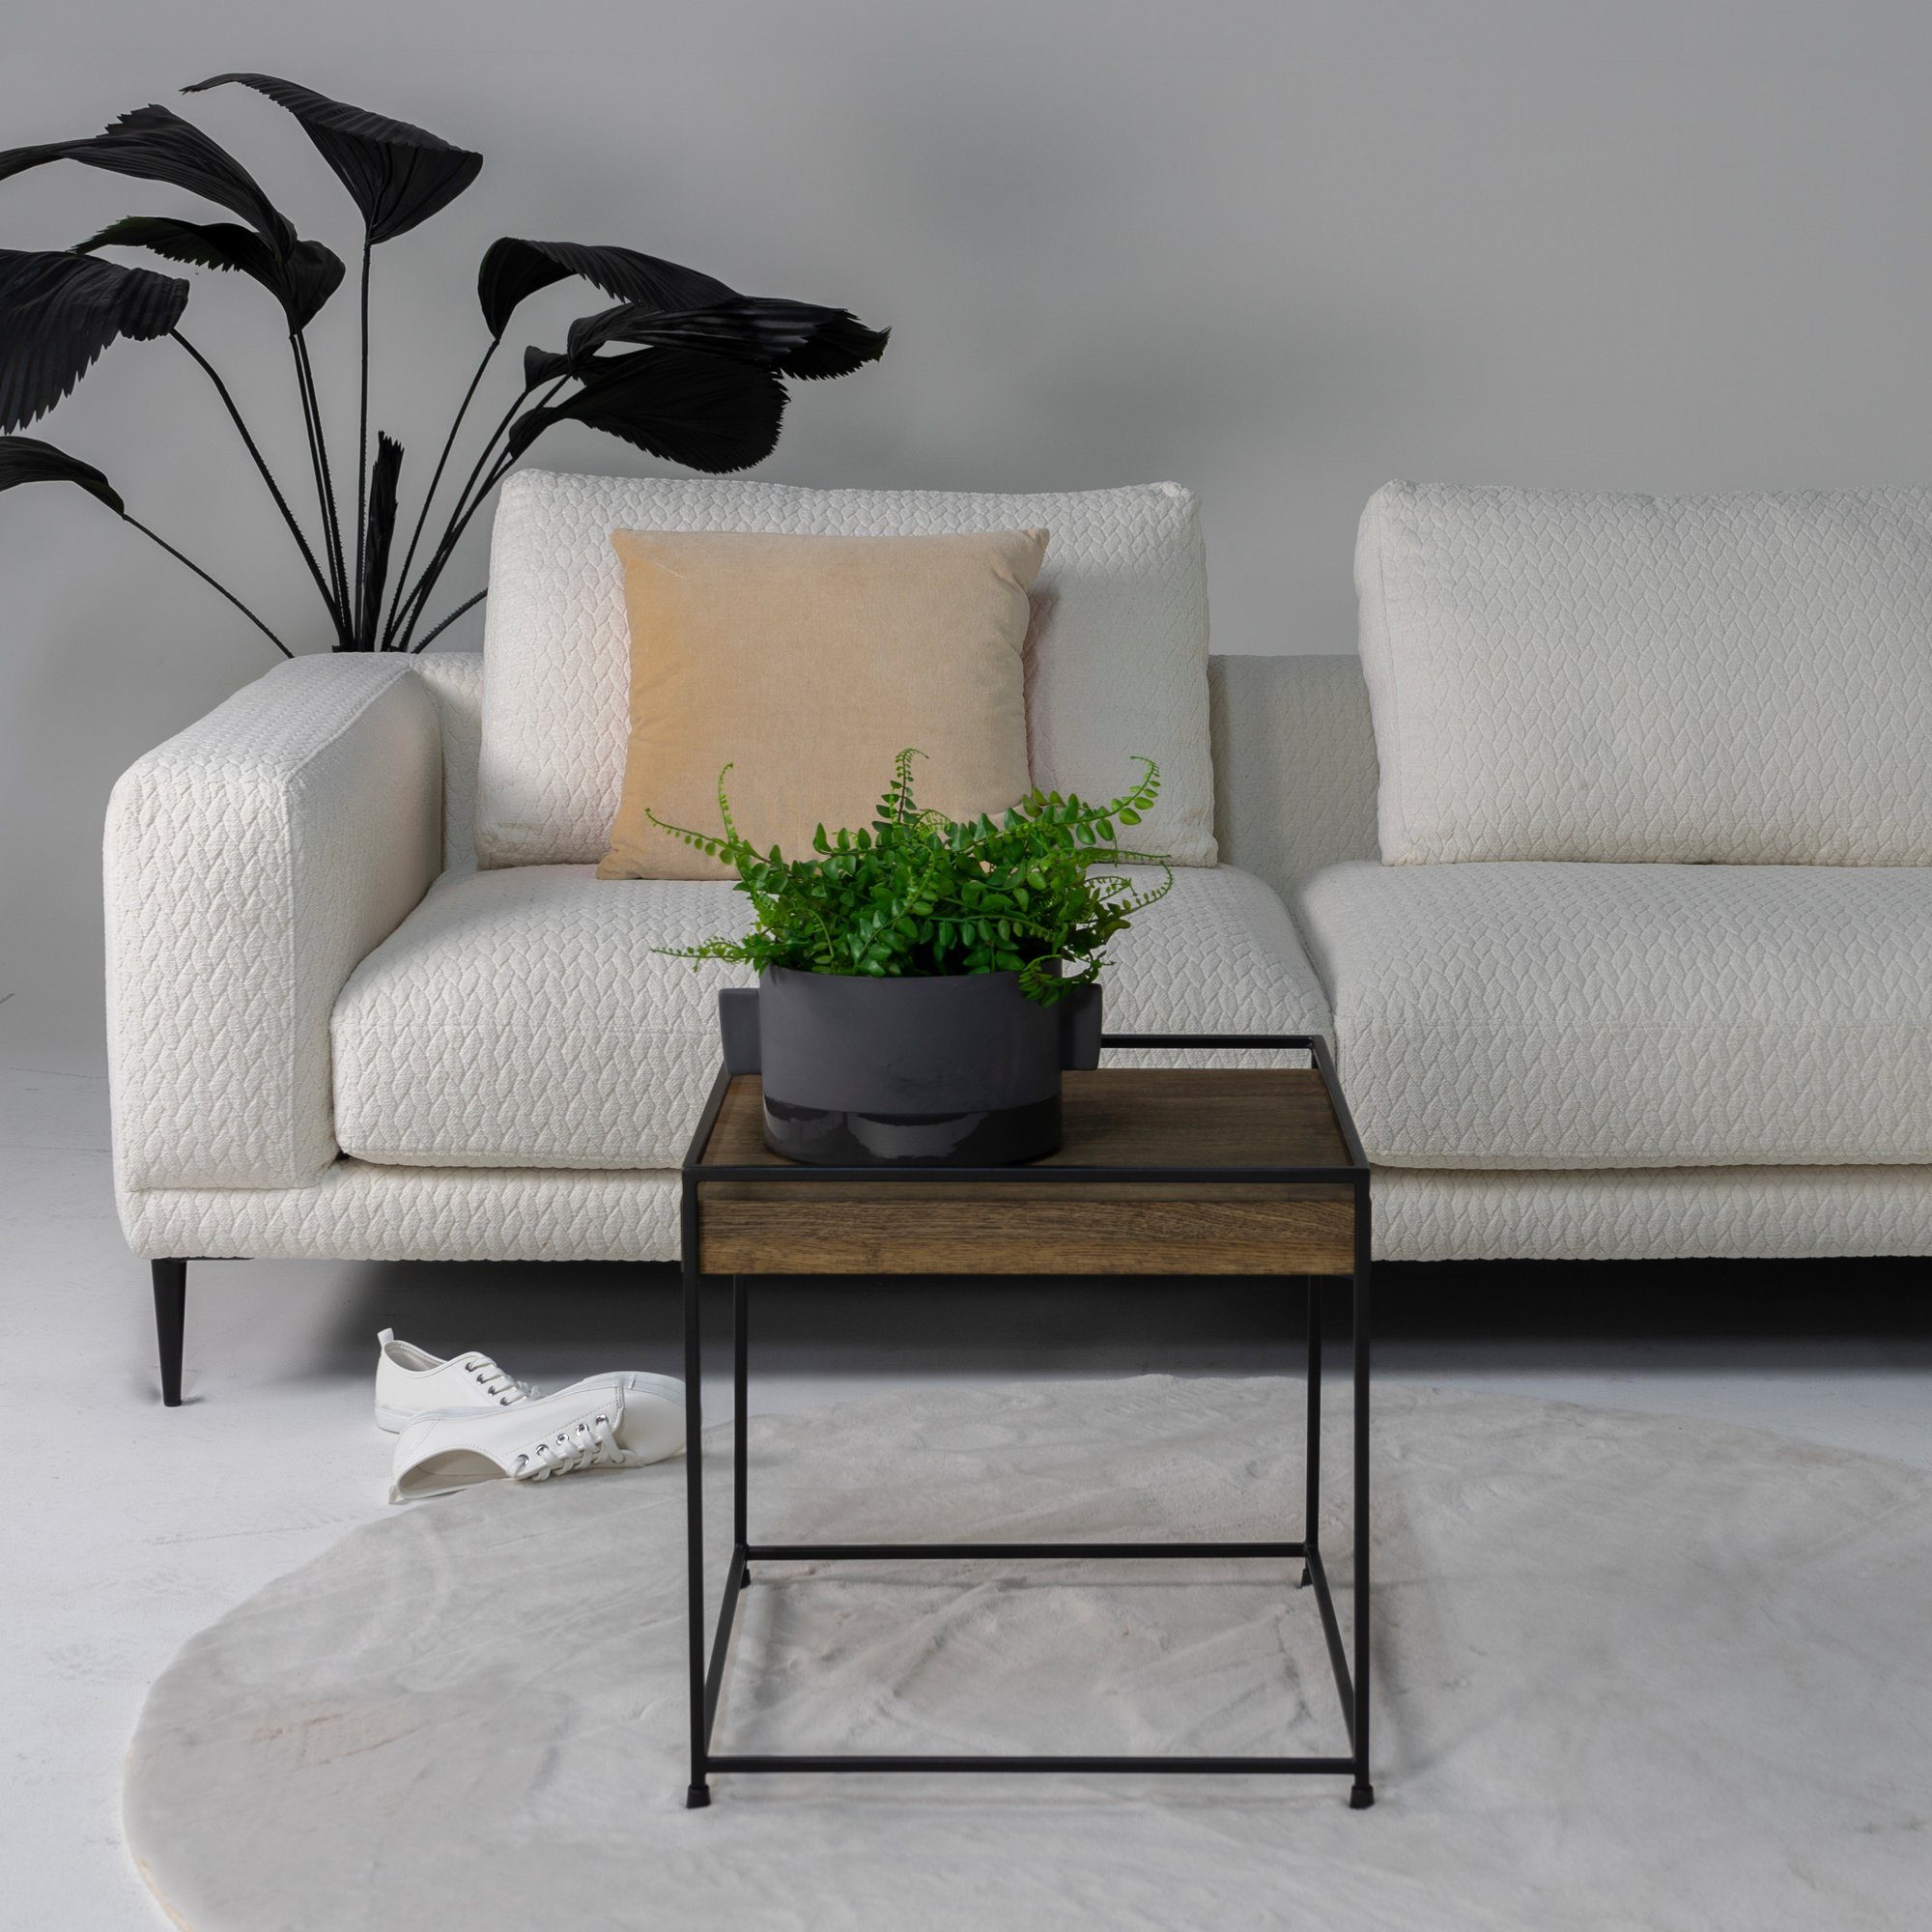 Design Torna WALNUT Furniture Beistelltisch Torna WOOD THIN 46x46x46cm - 40 Beistelltisch Black